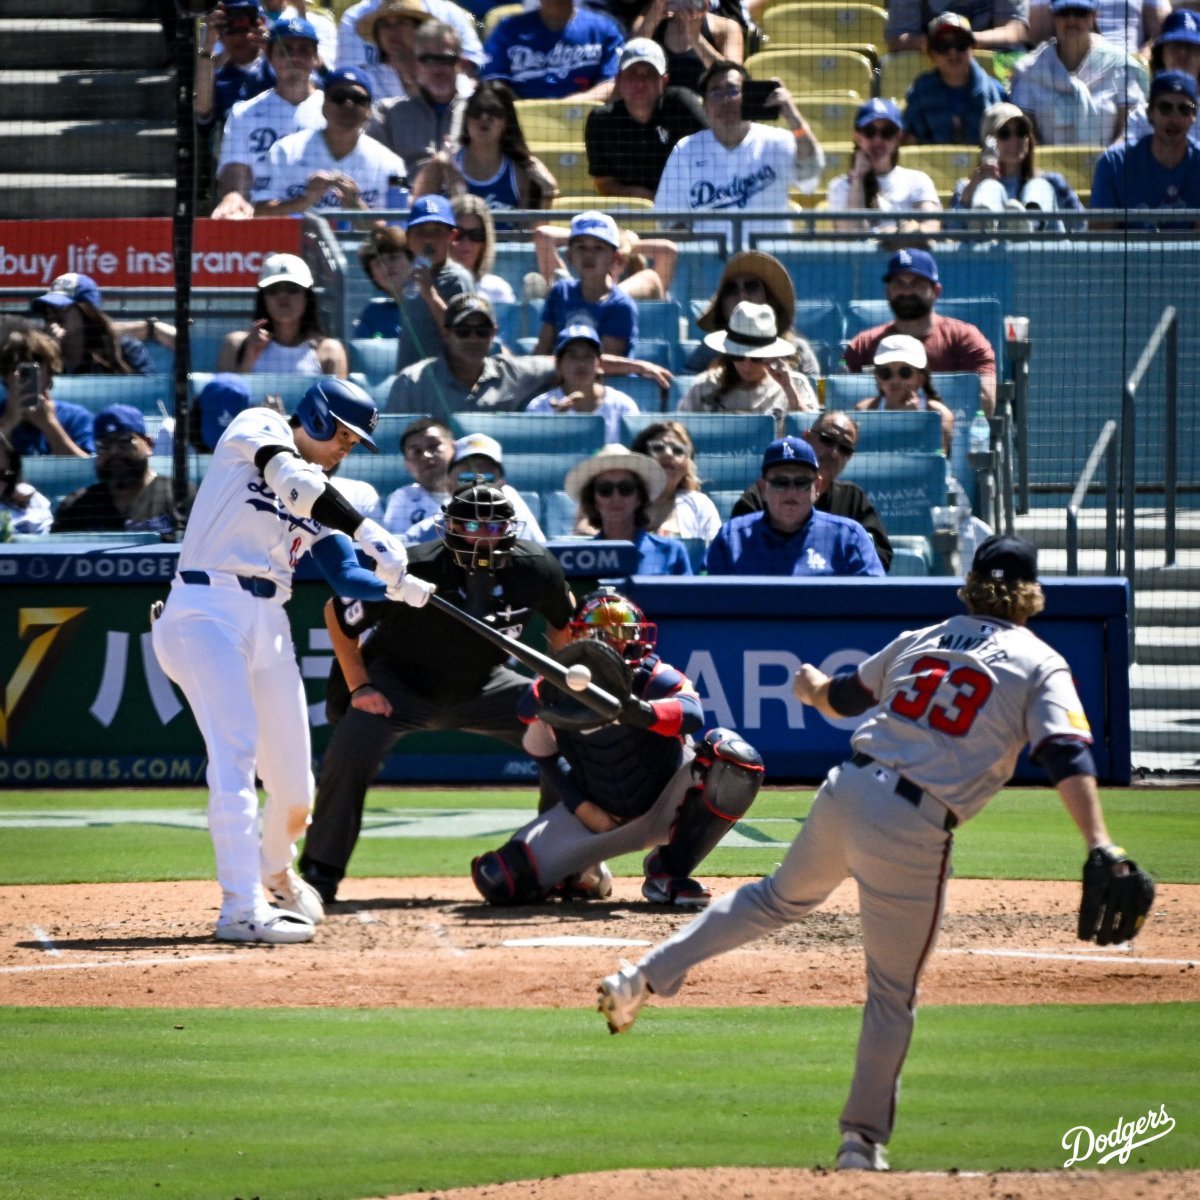 LA 다저스의 오타니 쇼헤이(왼쪽)가 6일 애틀랜타와의 안방경기 8회말에 이날 자신의 두 번째 홈런으로 이어진 배팅을 하고 있다. 오타니는 이날 홈런 2개를 포함해 4타수 4안타 3타점 활약으로 팀의 5-1 승리를 이끌었다. 사진 출처 LA 다저스 구단 소셜미디어